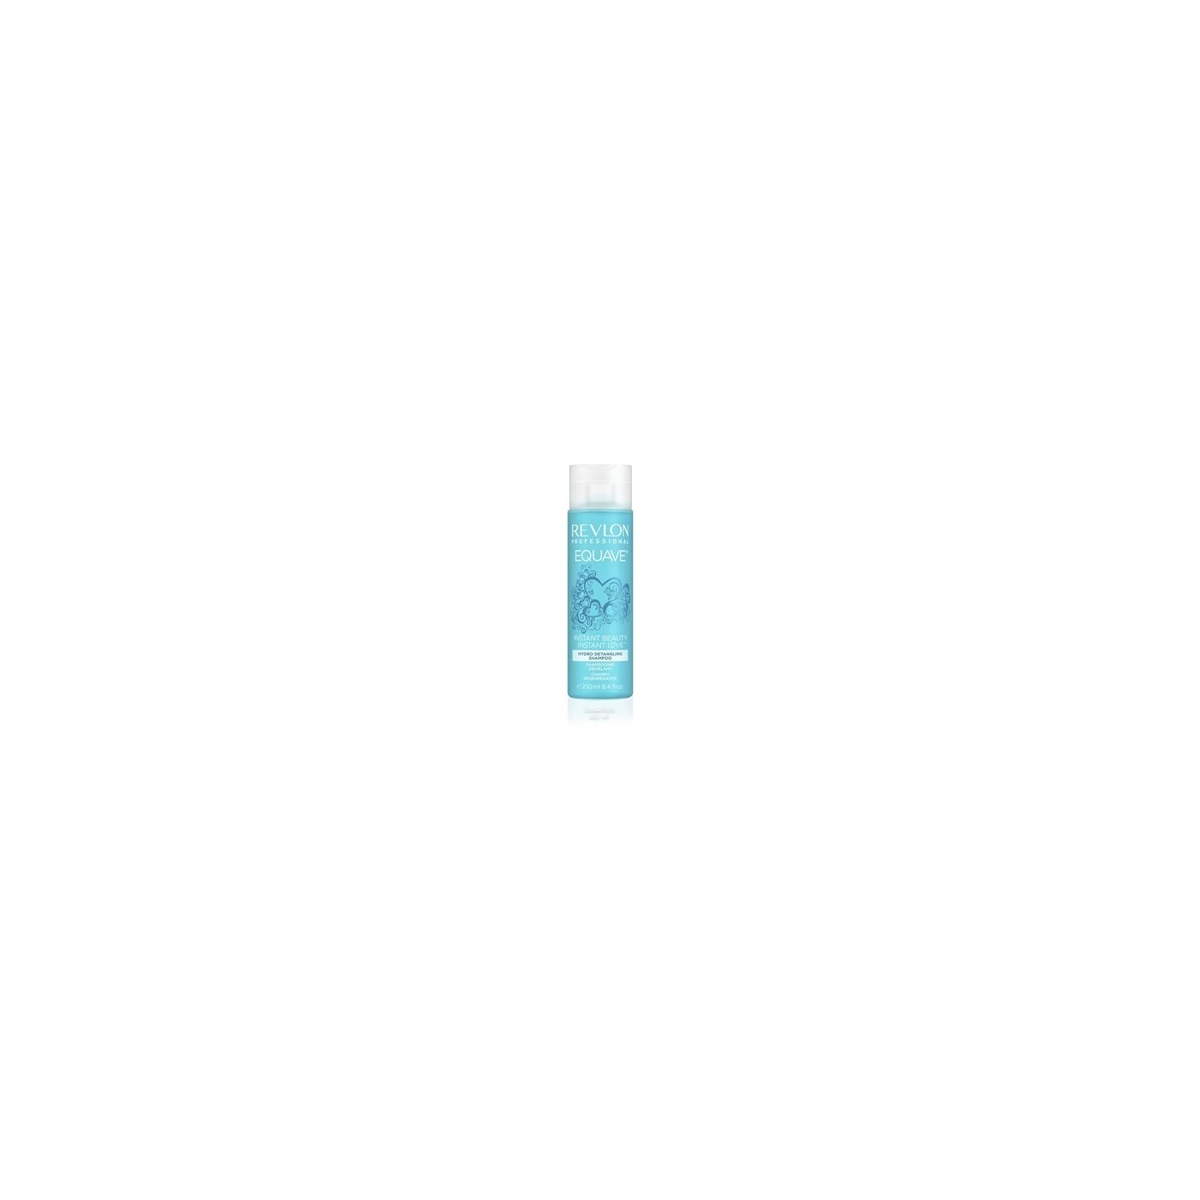 REVLON PROFESSIONAL - EQUAVE - HYDRO DETANGLING (250ml) Shampoo